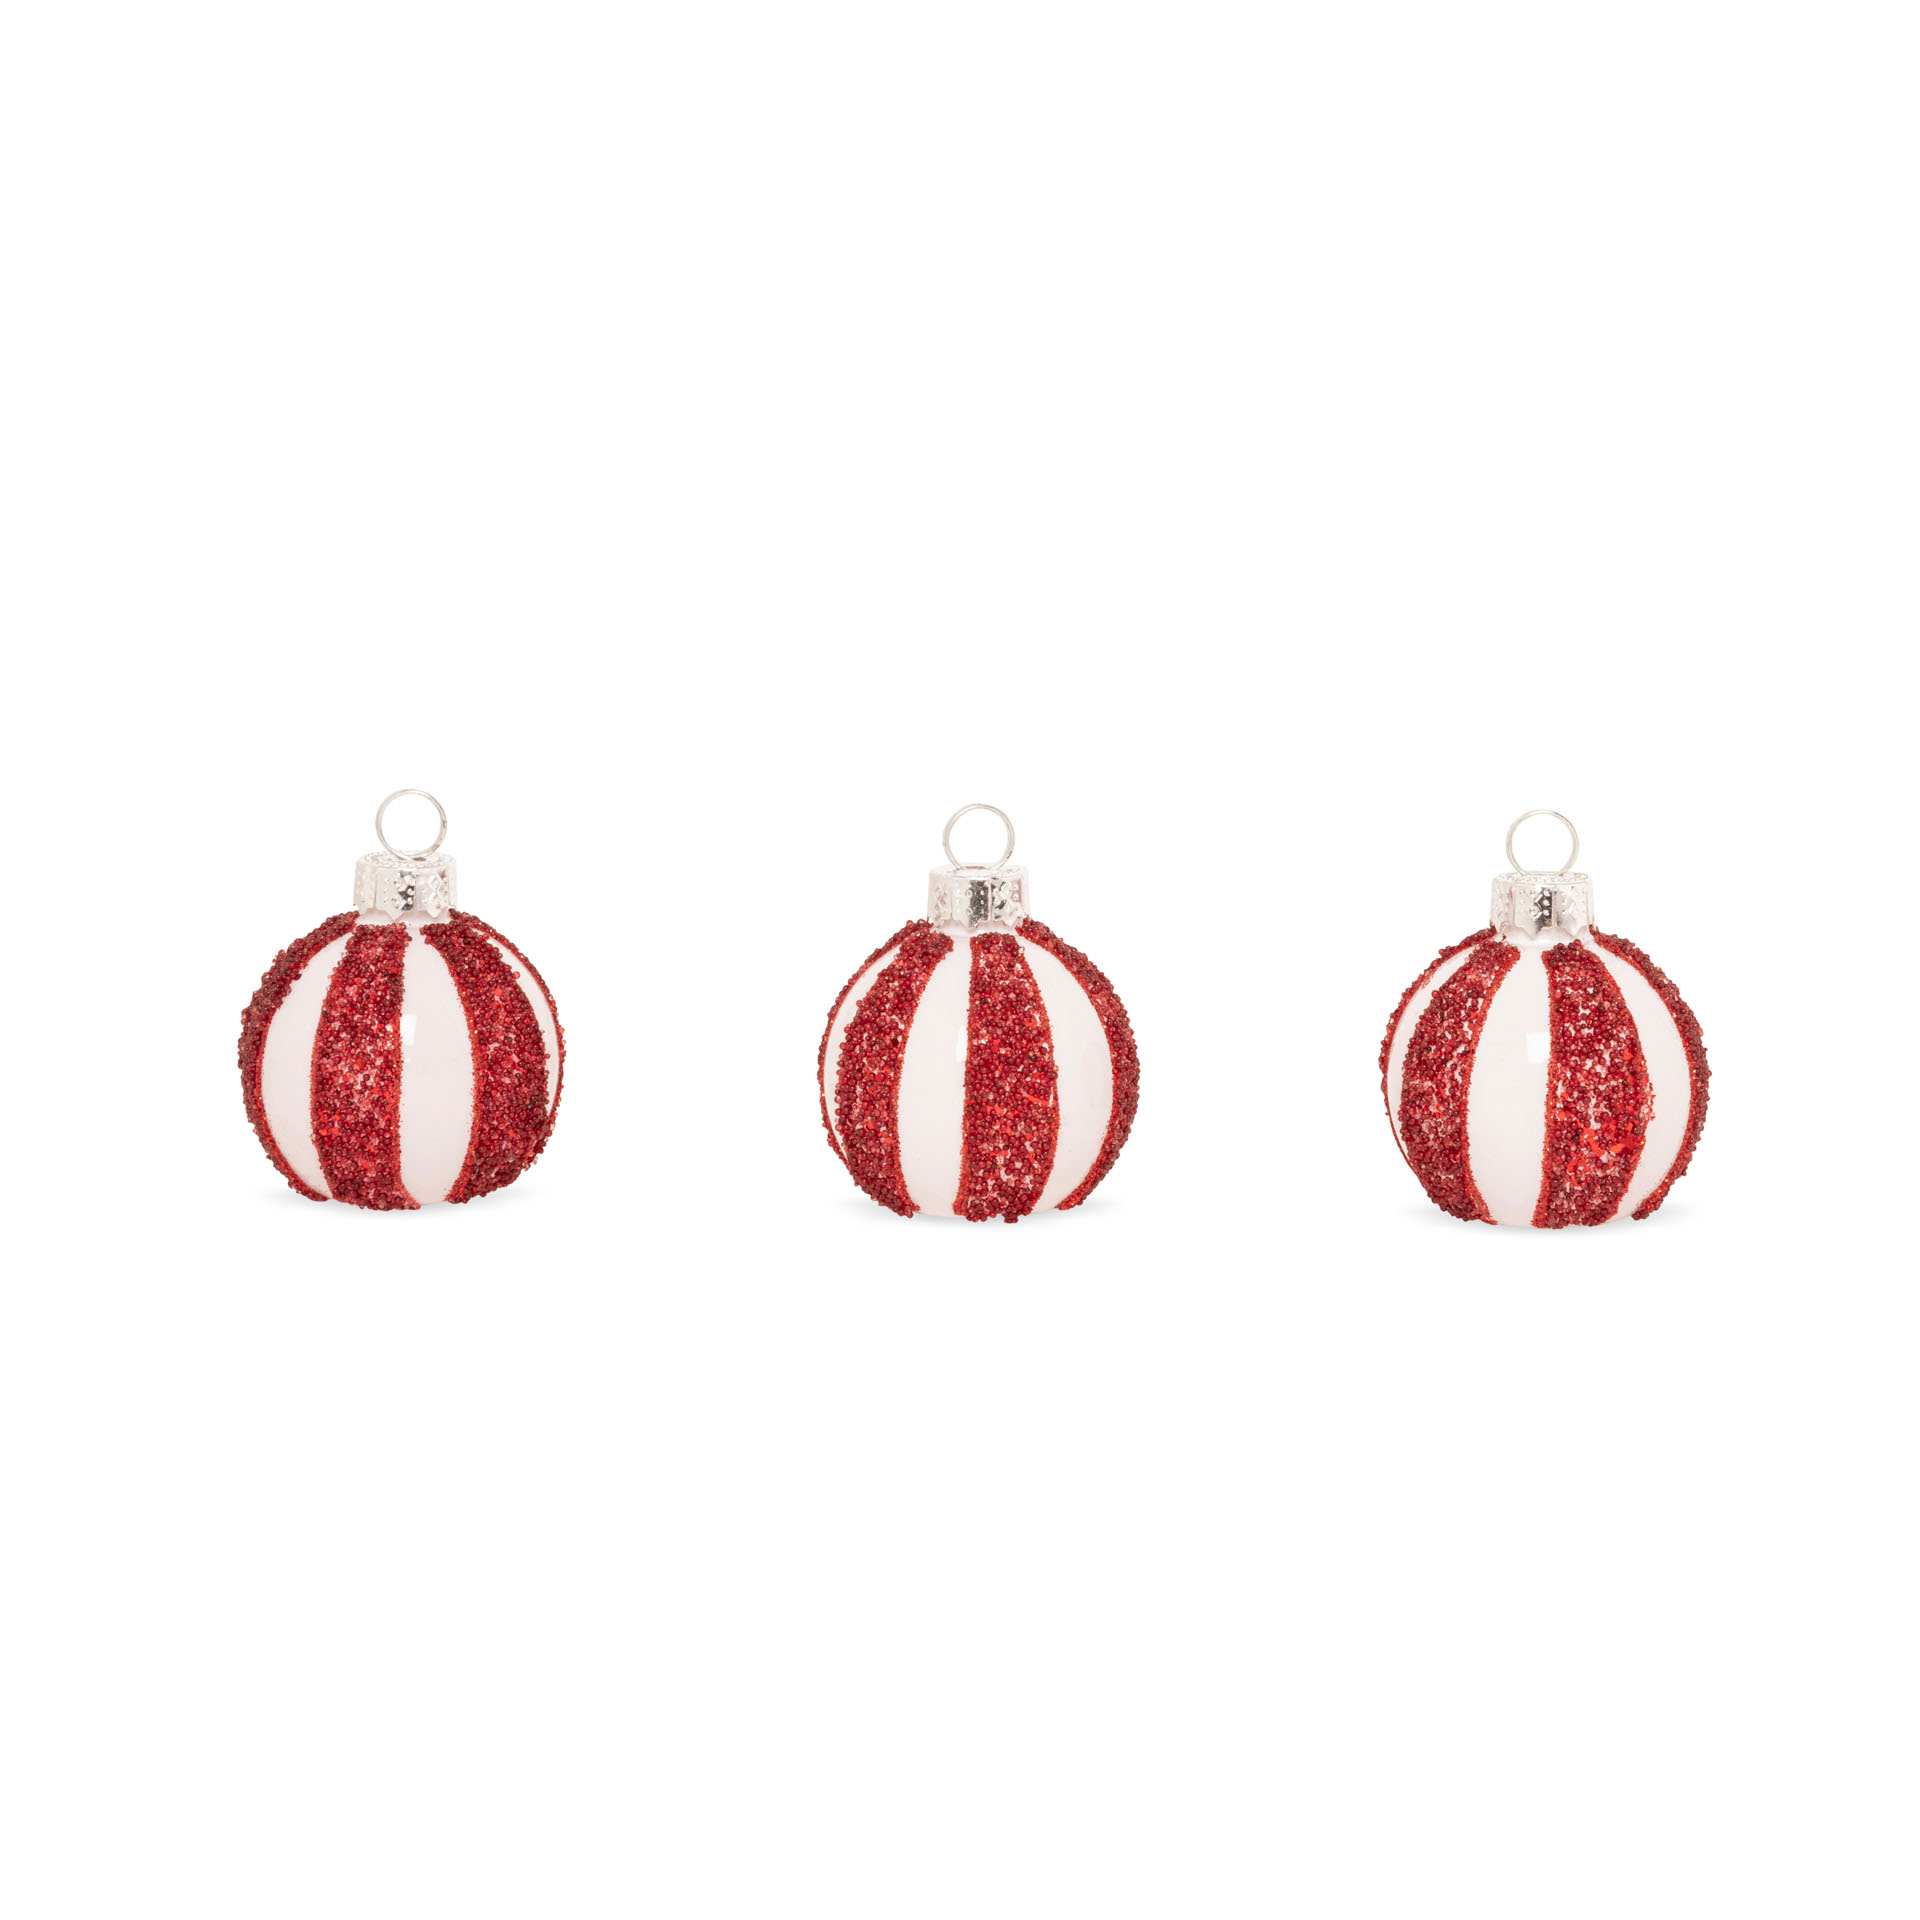 Segnaposto natalizi - Set da 6 pz, rosse e bianche, rosso e bianco, large